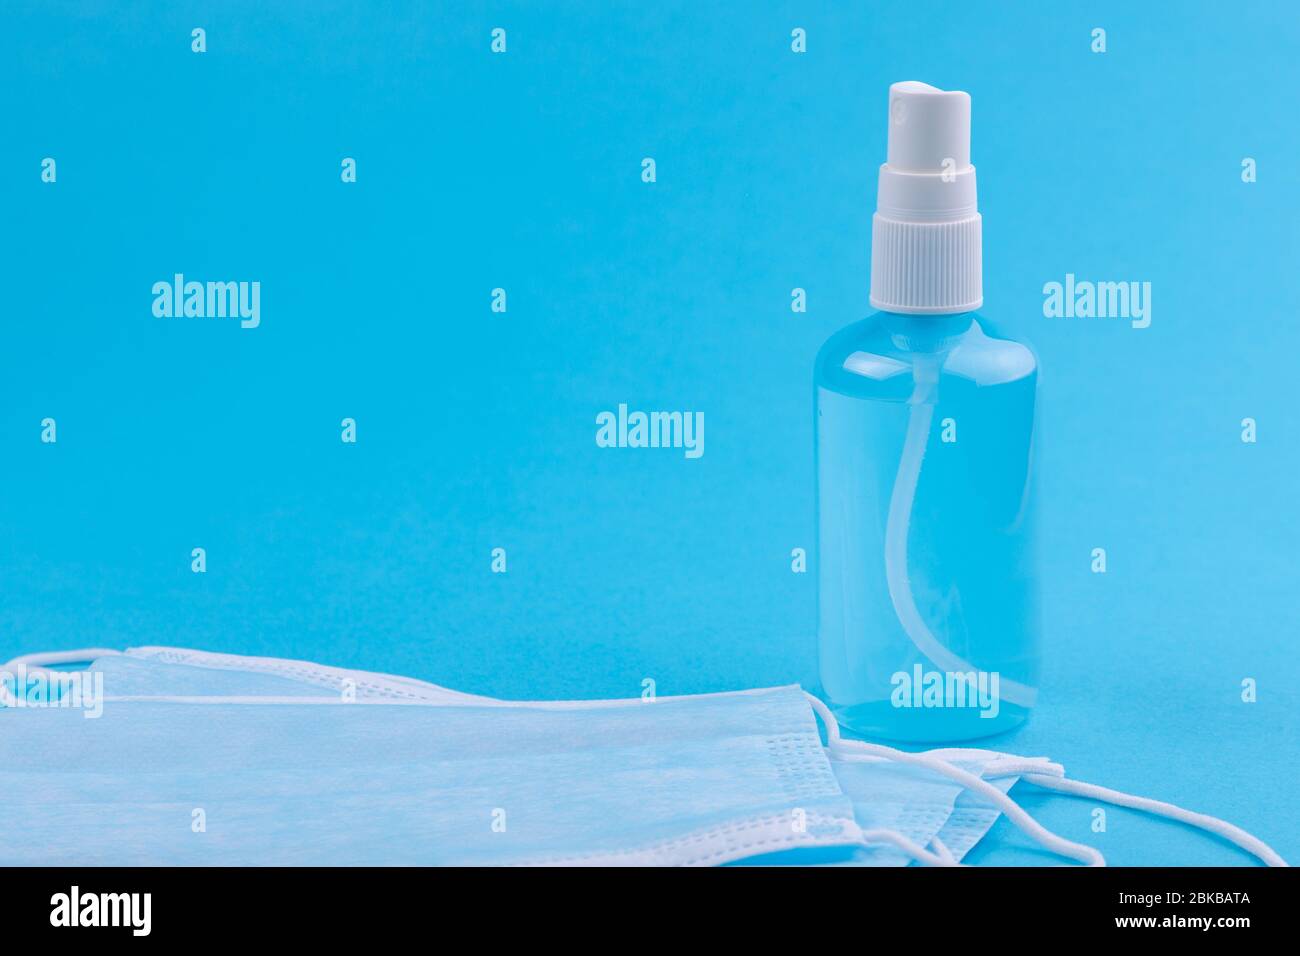 Masque médical et spray antiseptique isolé sur bleu Banque D'Images